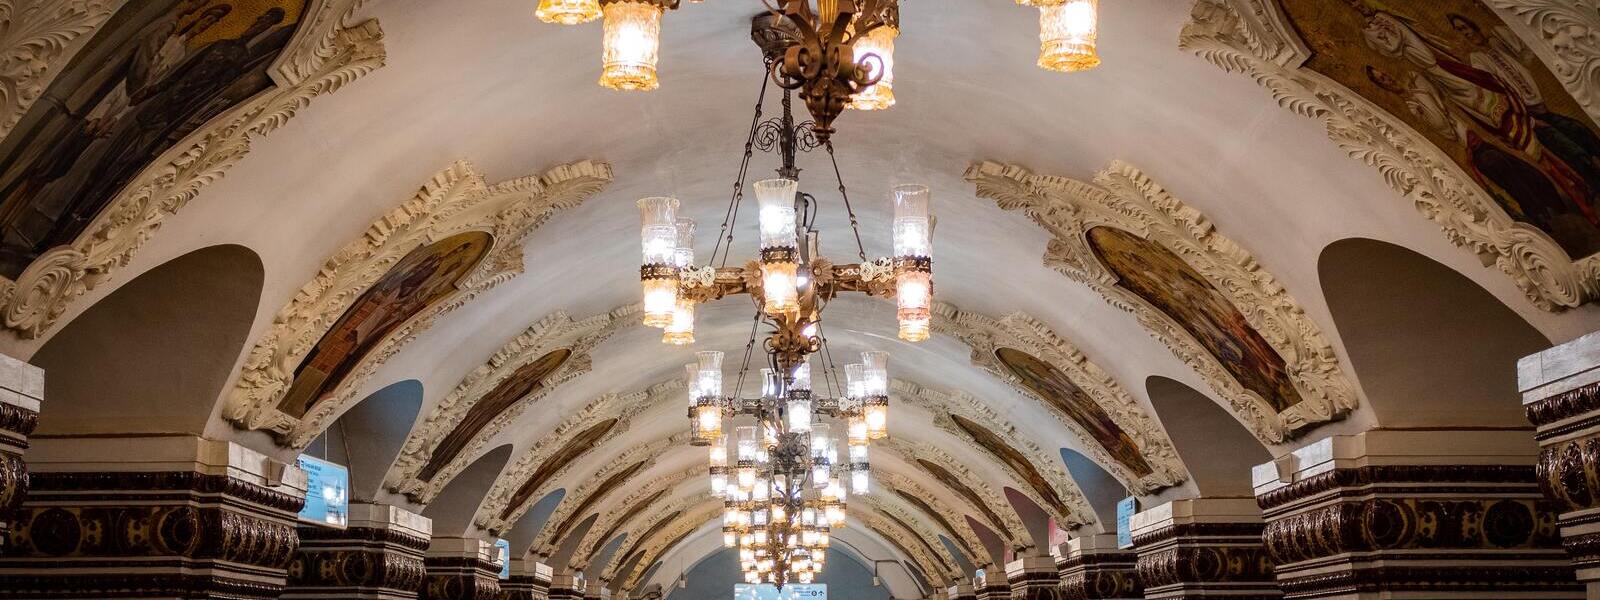 Экскурсии в метро Москвы